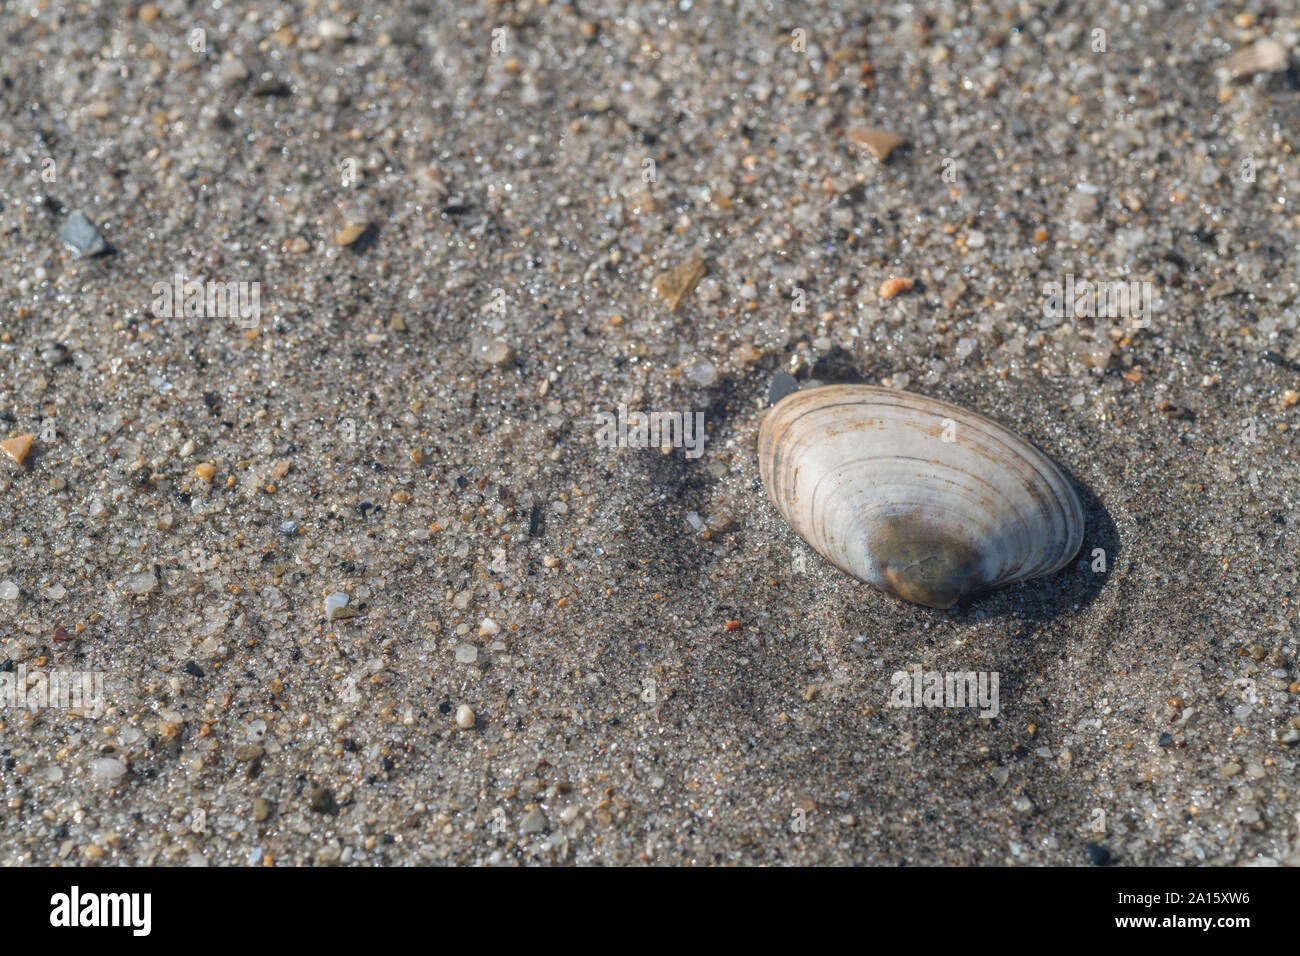 Isolierte Meeresbucht, die am Sandstrand in Cornwall angeschwemmt wird. Isolierte Muschel, ganz allein, auf einsam, konchologisch. Möglicherweise Lutraria lutraria Otter Shell Stockfoto